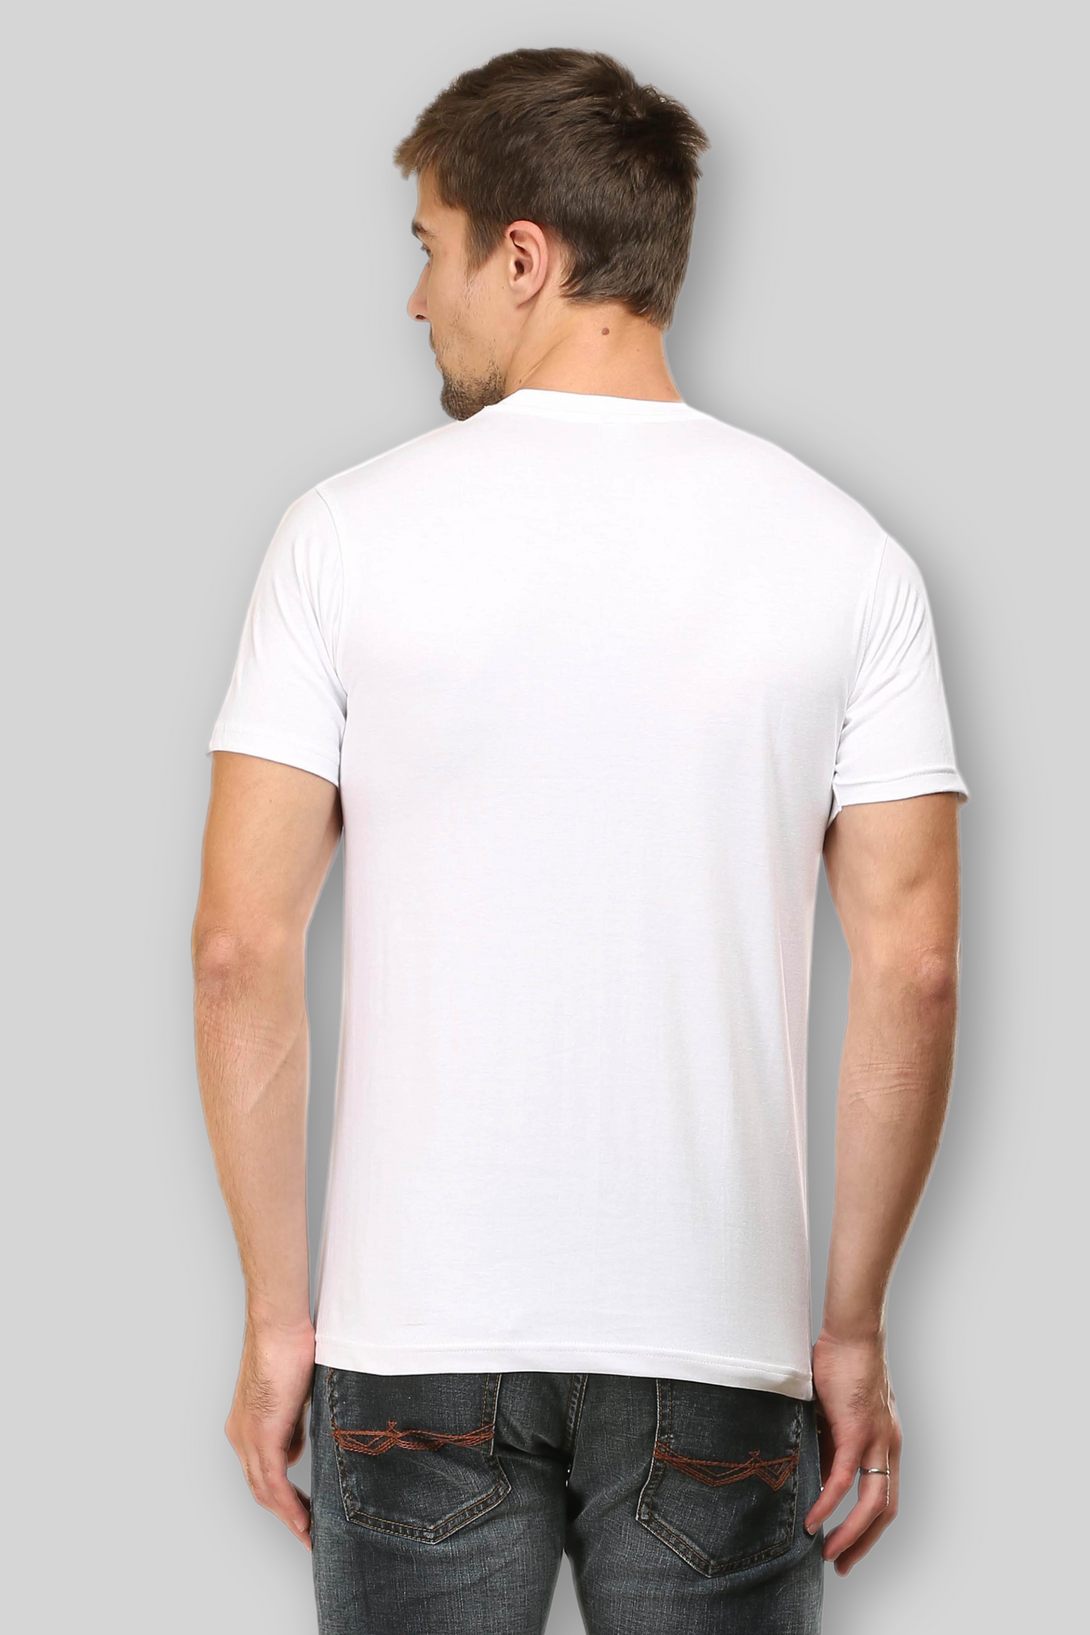 White T-Shirt For Men - WowWaves - 5